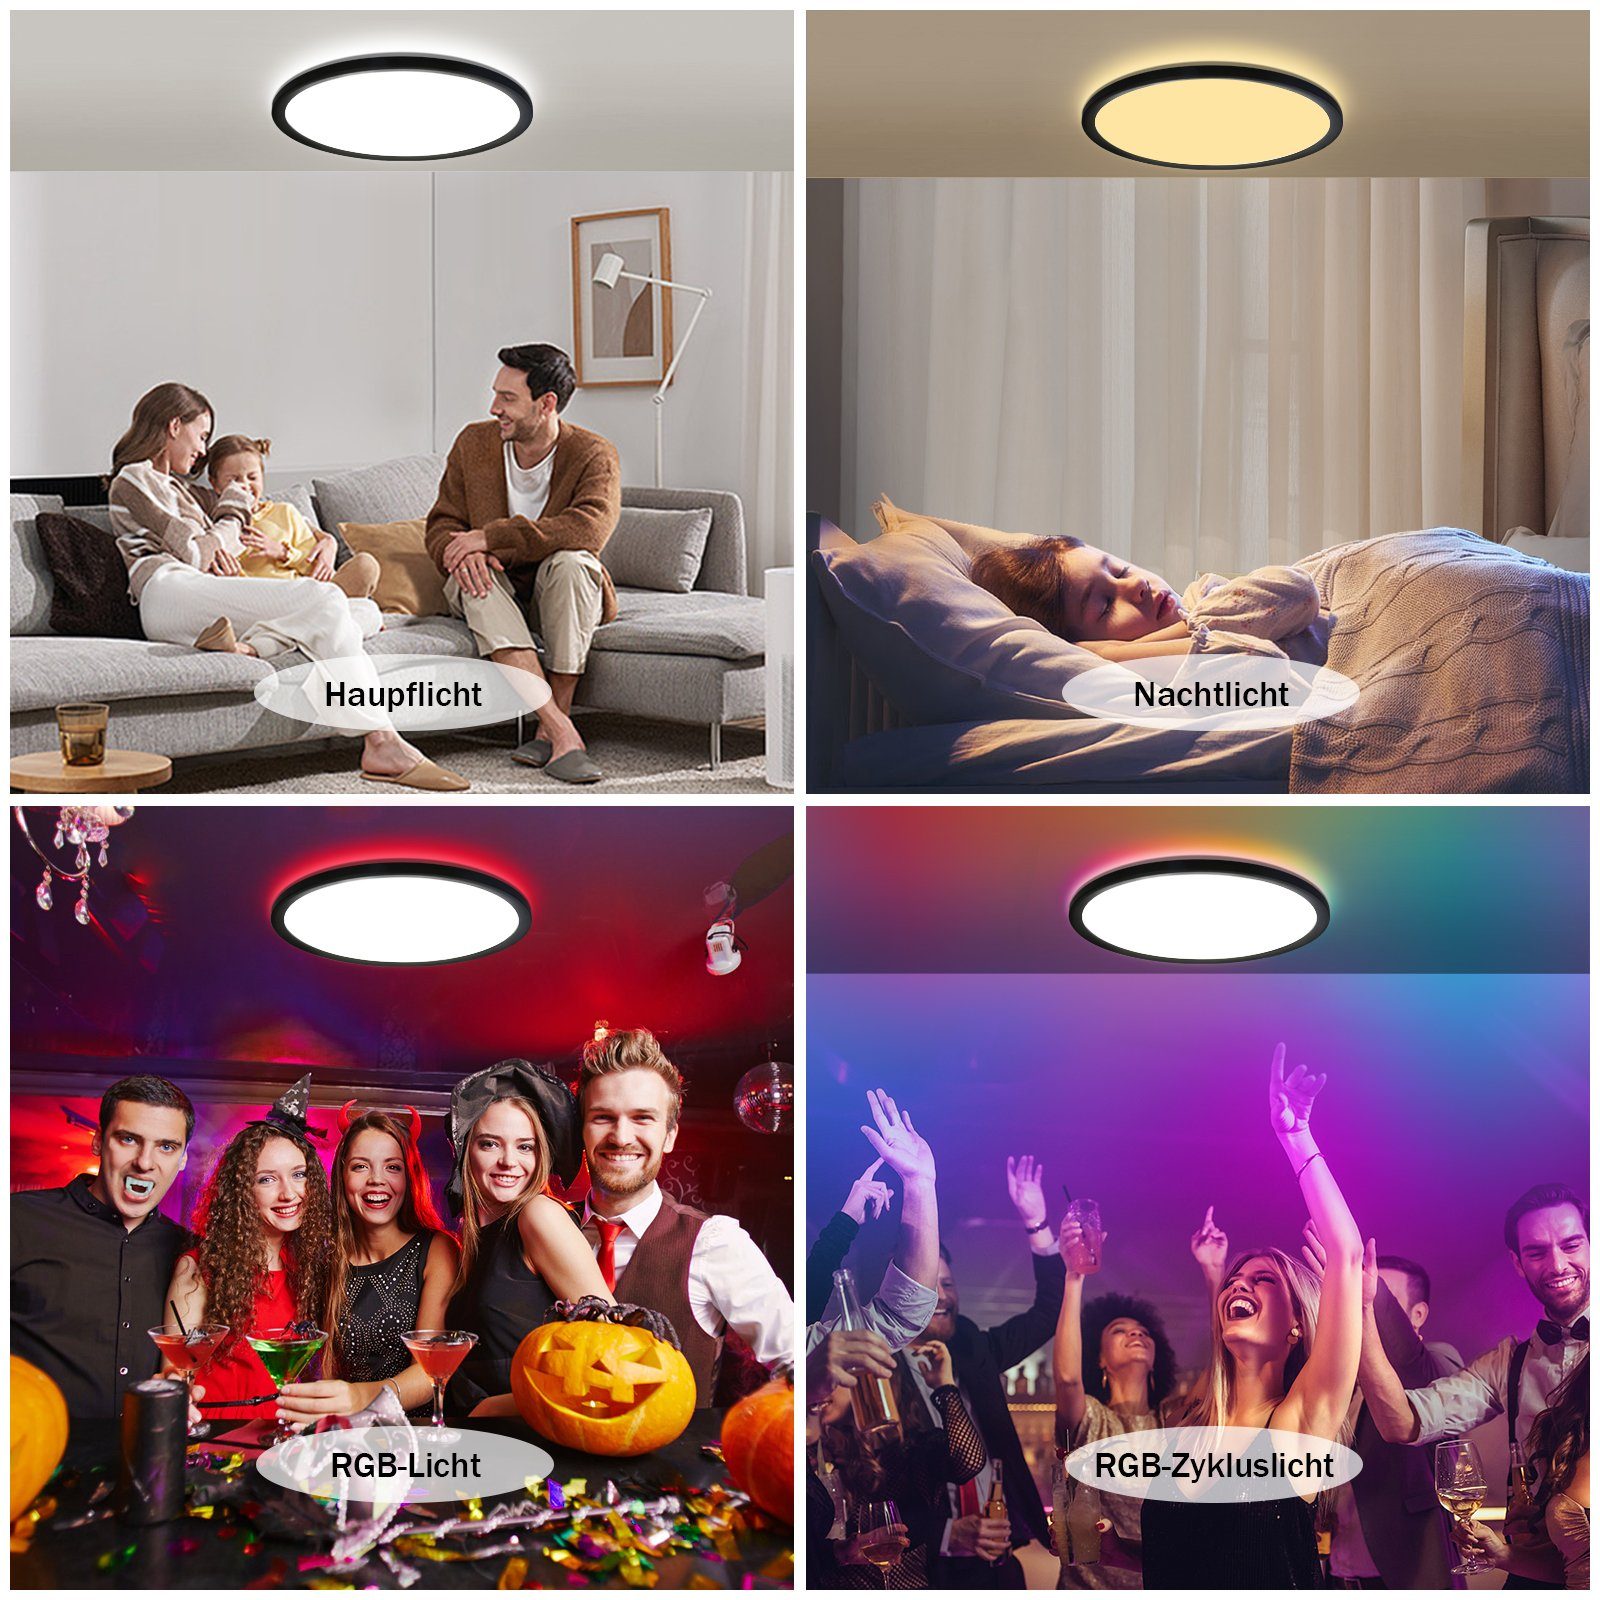 ZMH LED Deckenleuchte Dimmbar, Hintergrundleuchtung RGB mit LED Dünn integriert, Schwarz Rund 28W IP44 Fernbedienung, Flach warmweiß-kaltweiß, fest